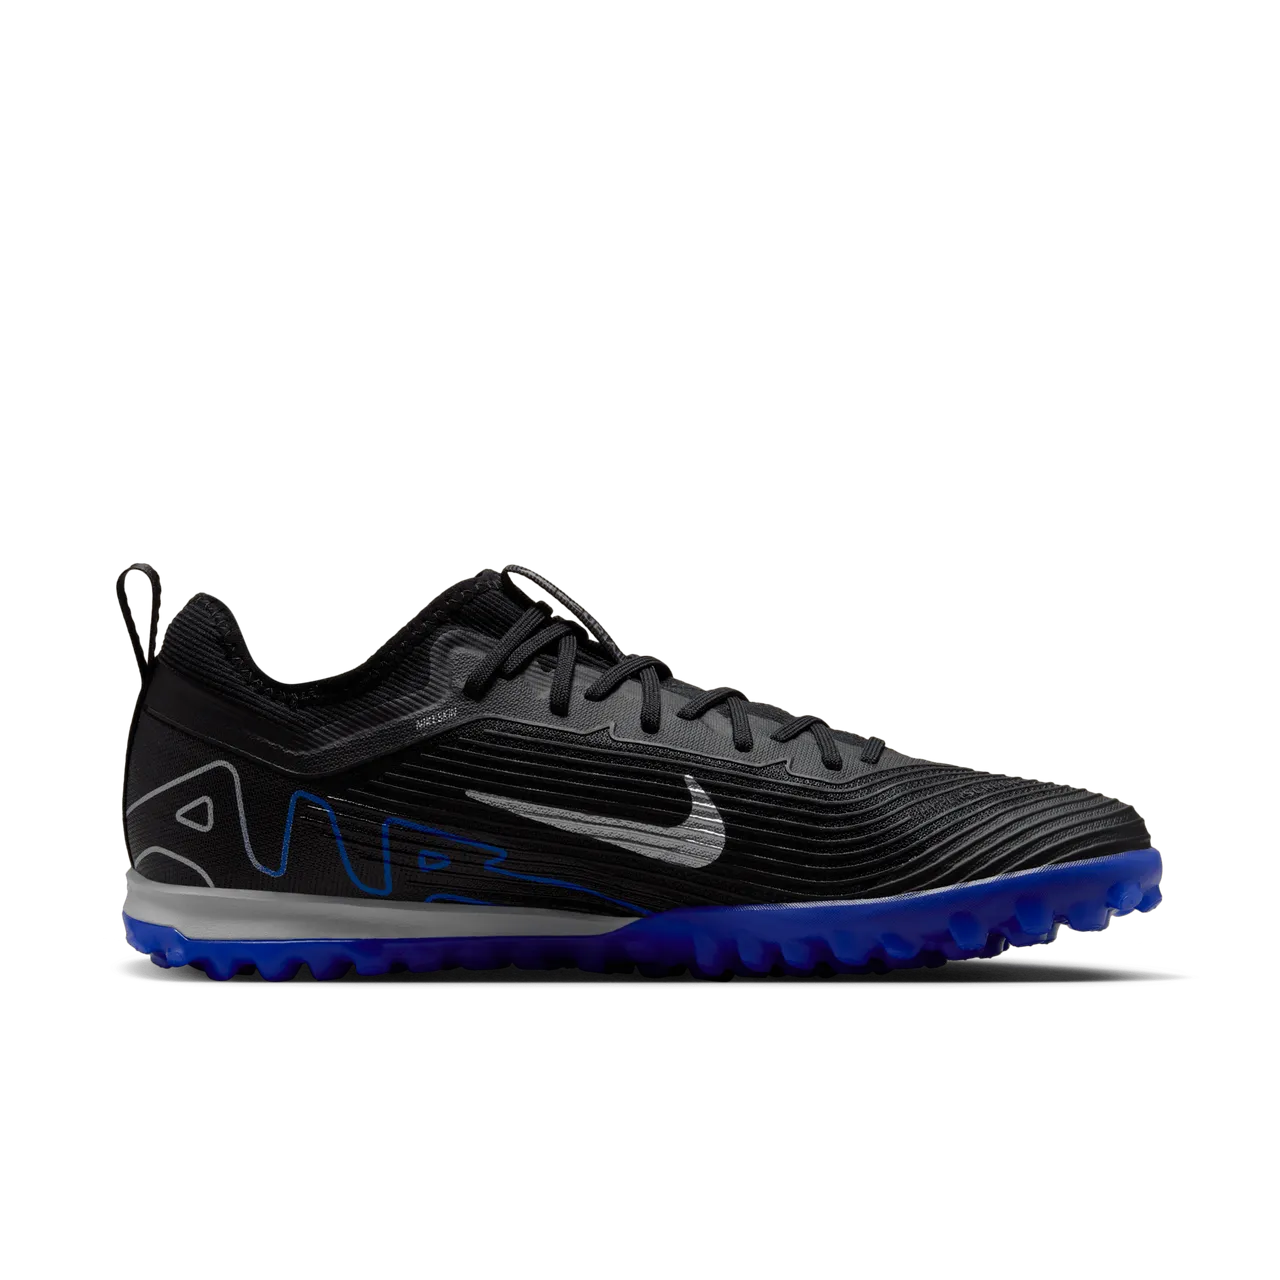 Nike Mercurial Vapor 15 Pro low top voetbalschoenen (turf) - Zwart